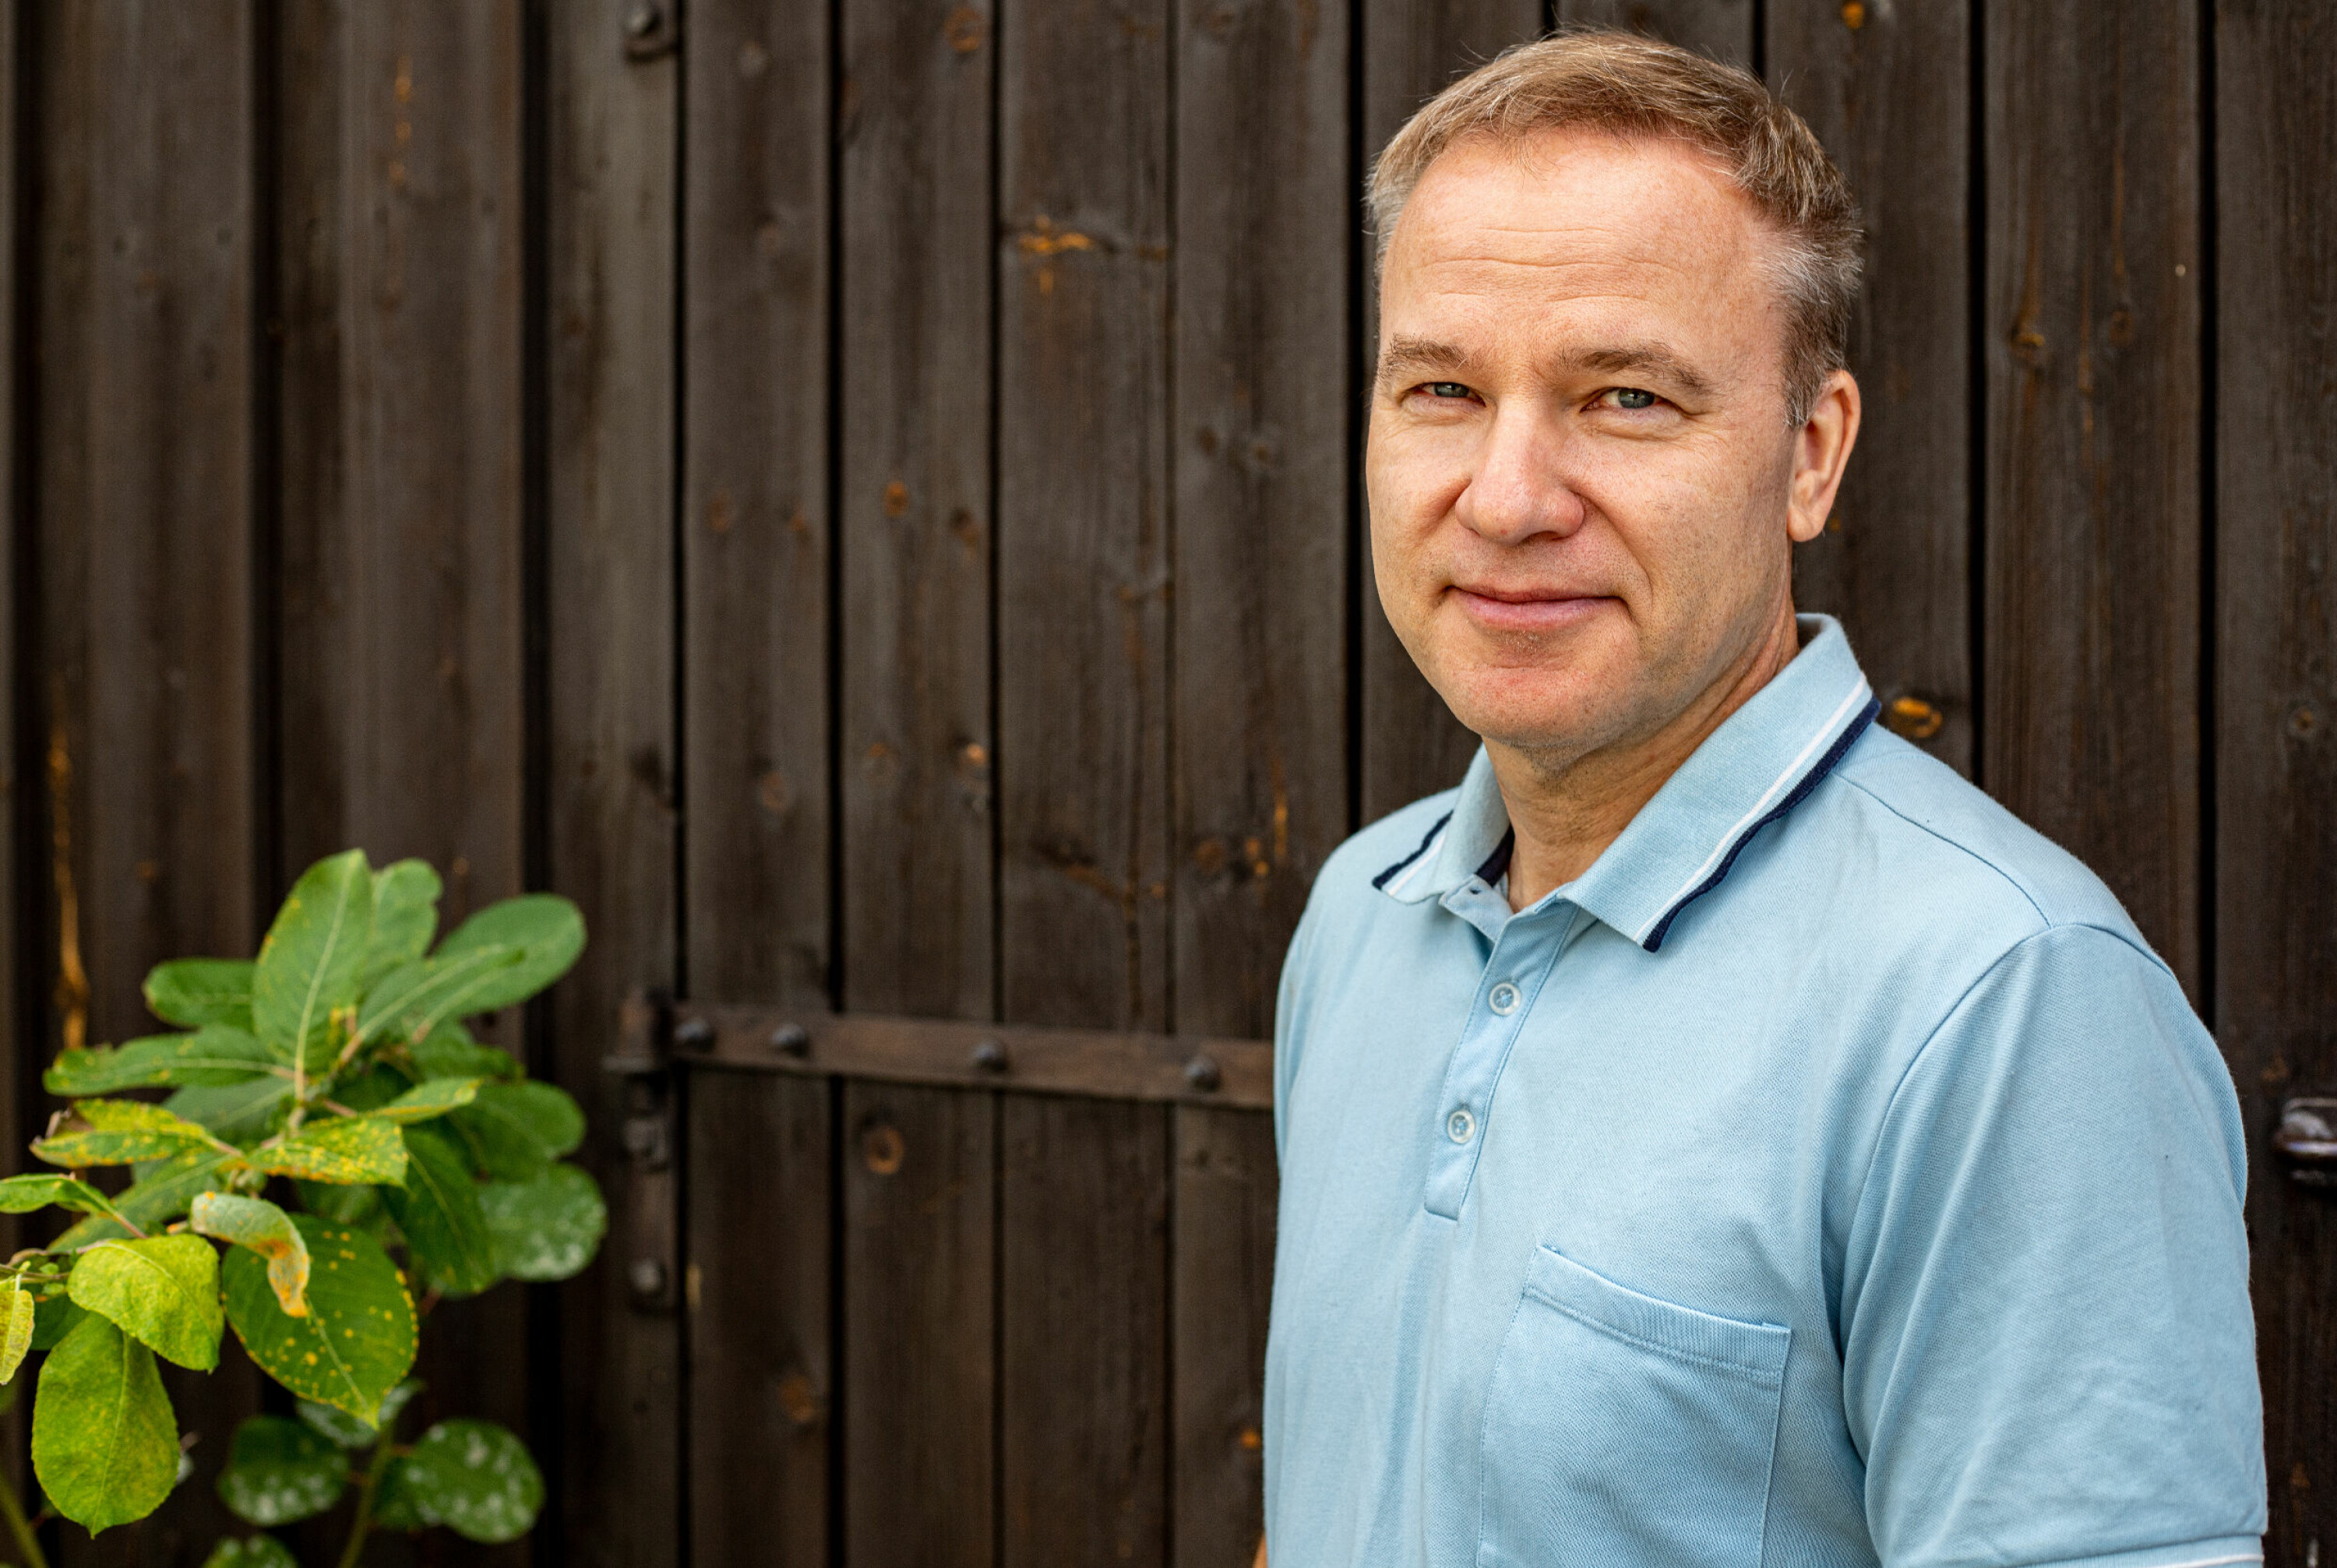 Inyheter skal bidra mindre til polarisering enn hva Resett har gjort, sier Helge Lurås til Journalisten.